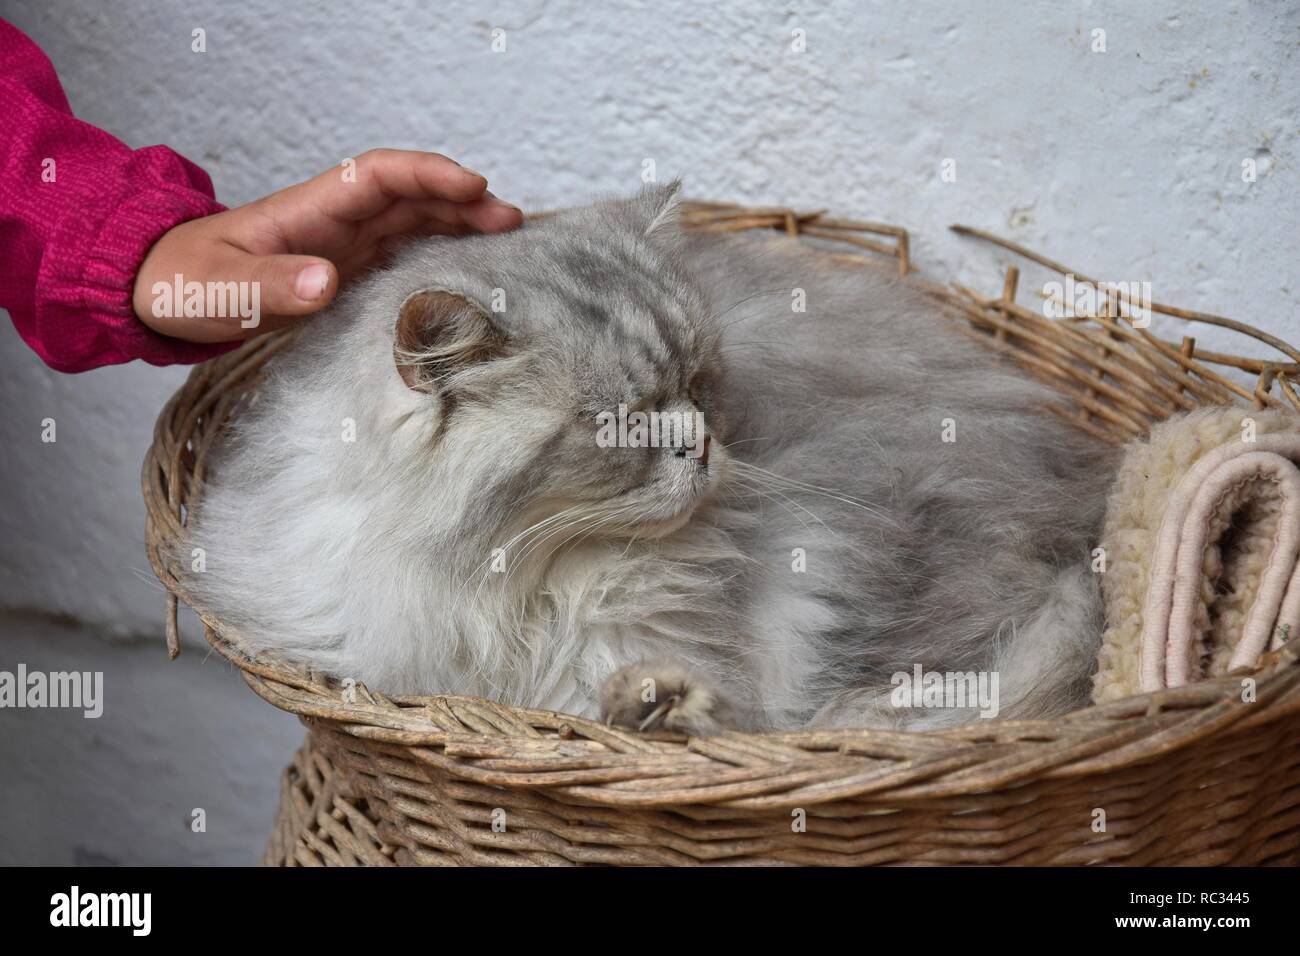 Un bambino è la mano che accarezzano un silver tabby gatto persiano, giacente in un cestello. Foto Stock